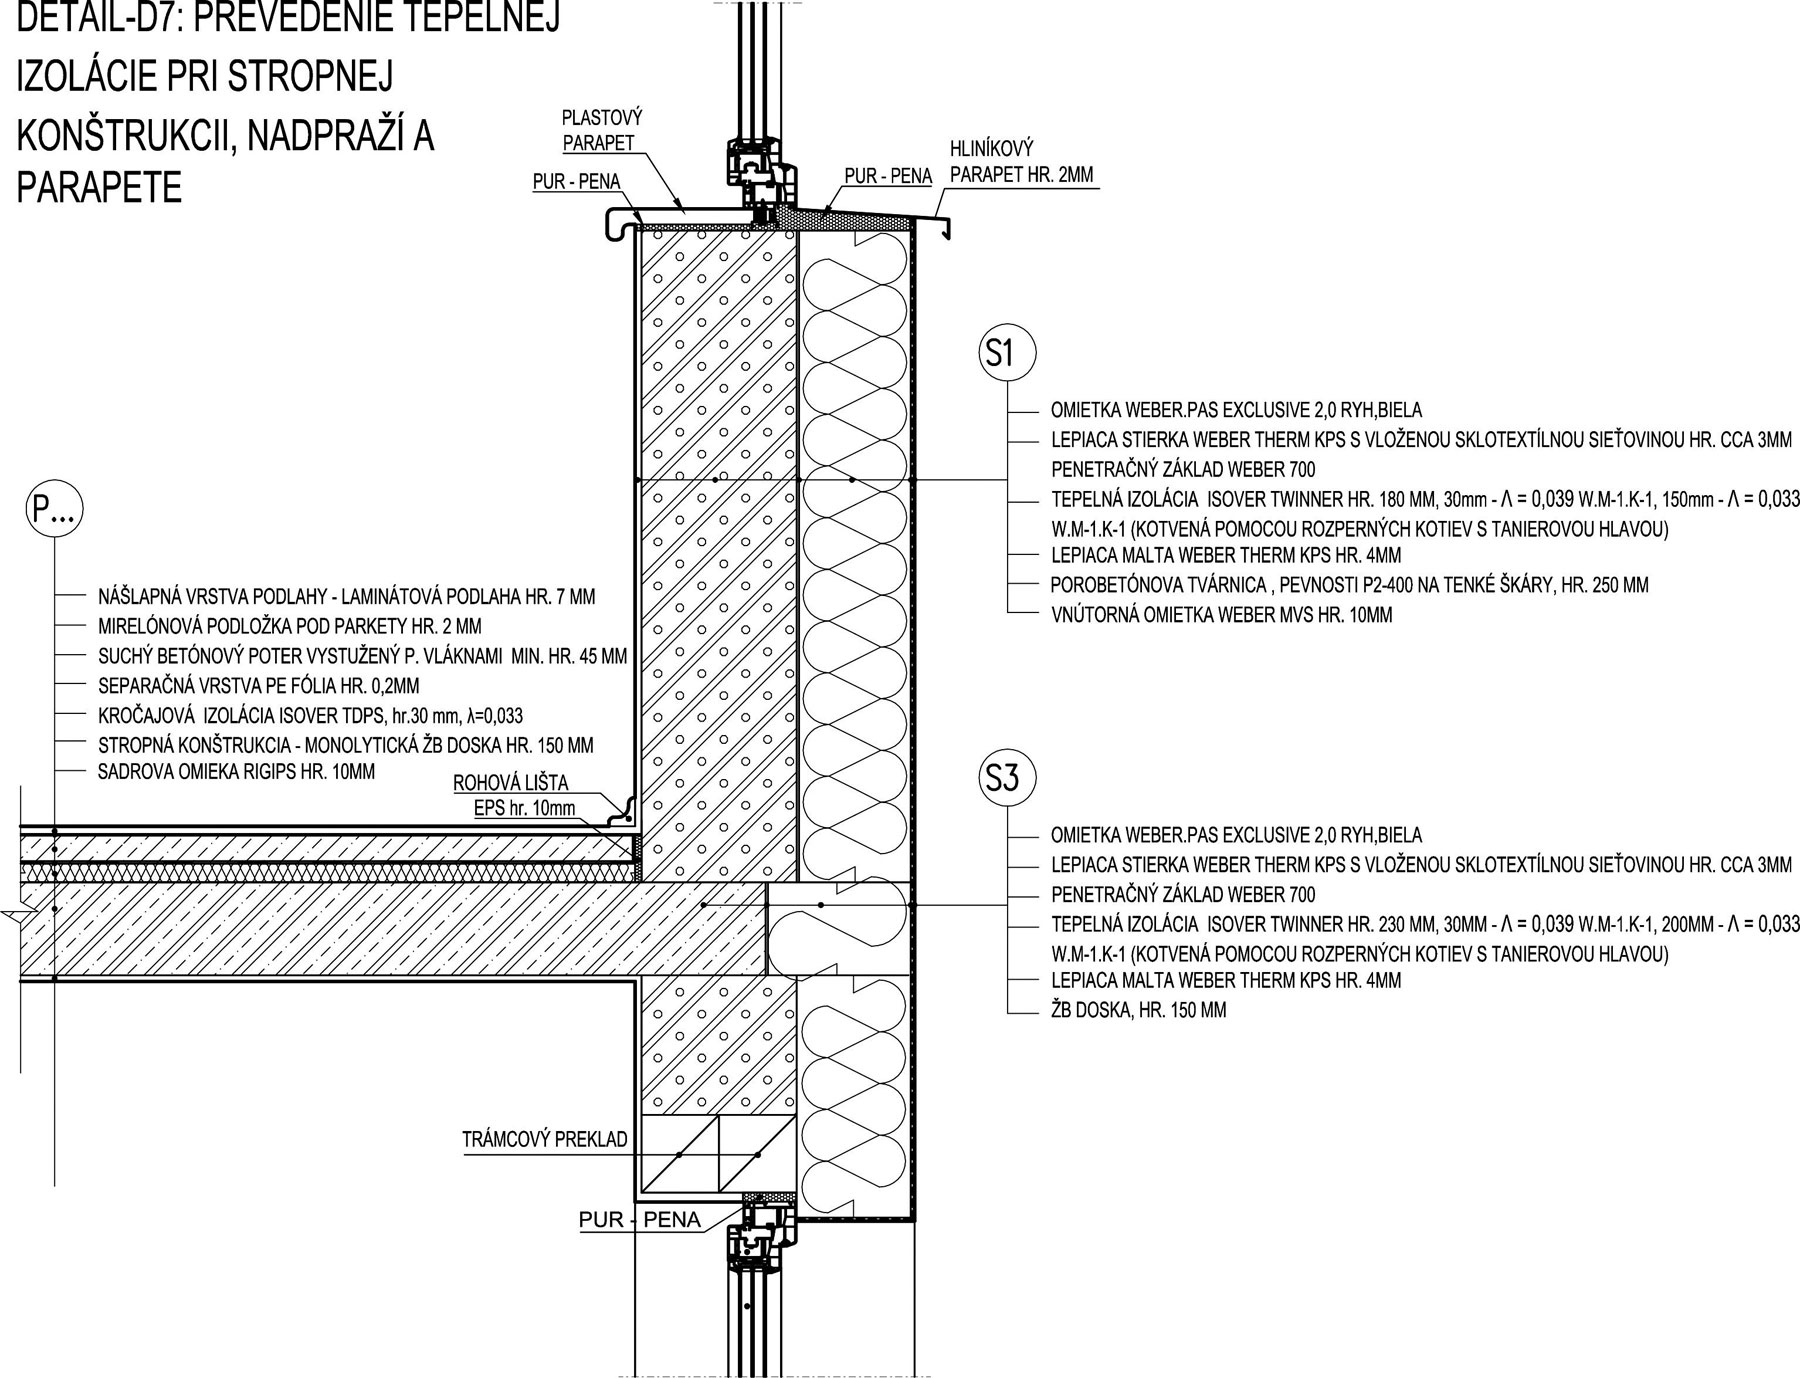 1 Nášlapná vrstva podlahy – laminátová podlaha o tloušťce 7 mm, 2 Mirelonová podložka pod parkety o tloušťce 2 mm, 3 Suchý betonový potěr vyztužený vlákny s minimální tloušťkou 45 mm, 4 Separační vrstva, PE fólie o tloušťce 0,2 mm, 5 Kročejová izolace Isover TDPS o tloušťce 30 mm, l = 0,033, 6 Stropní konstrukce – monolitická železobetonová deska abílá, 9 Lepicí stěrka Weber Therm KPS s vloženou sklotextilní síťovinou o tloušťce přibližně 3 mm; penetrační základ Weber 700, 10 Tepelná izolace Isover Twinner o tloušťce 180 mm (kotvená pomocí hmoždinek s talířovou hlavou), 11 Lepicí malta Weber Therm KPS o tloušťce 4 mm, 12 Pórobetonové tvárnice Ytong, pevnosti P2-400 na tenké spáry, s tloušťkou 250 mm, 13 Vnitřní omítka Weber o tloušťce 10 mm, 14 Omítka Weber Exclusive, bílá, 15 Lepicí stěrka Weber Therm KPS s vloženou skotextilní síťovinou o tloušťce 3 mm, 16 Penetrační základ G700, 17 Tepelná izolace Isover Twinner o tloušťce 230 mm (kotvená pomocí hmoždinek s talířovou hlavou), 18 Lepicí malta Weber Therm KPS o tloušťce 4 mm, 19 Železobetonová deska o tloušťce 150 mm